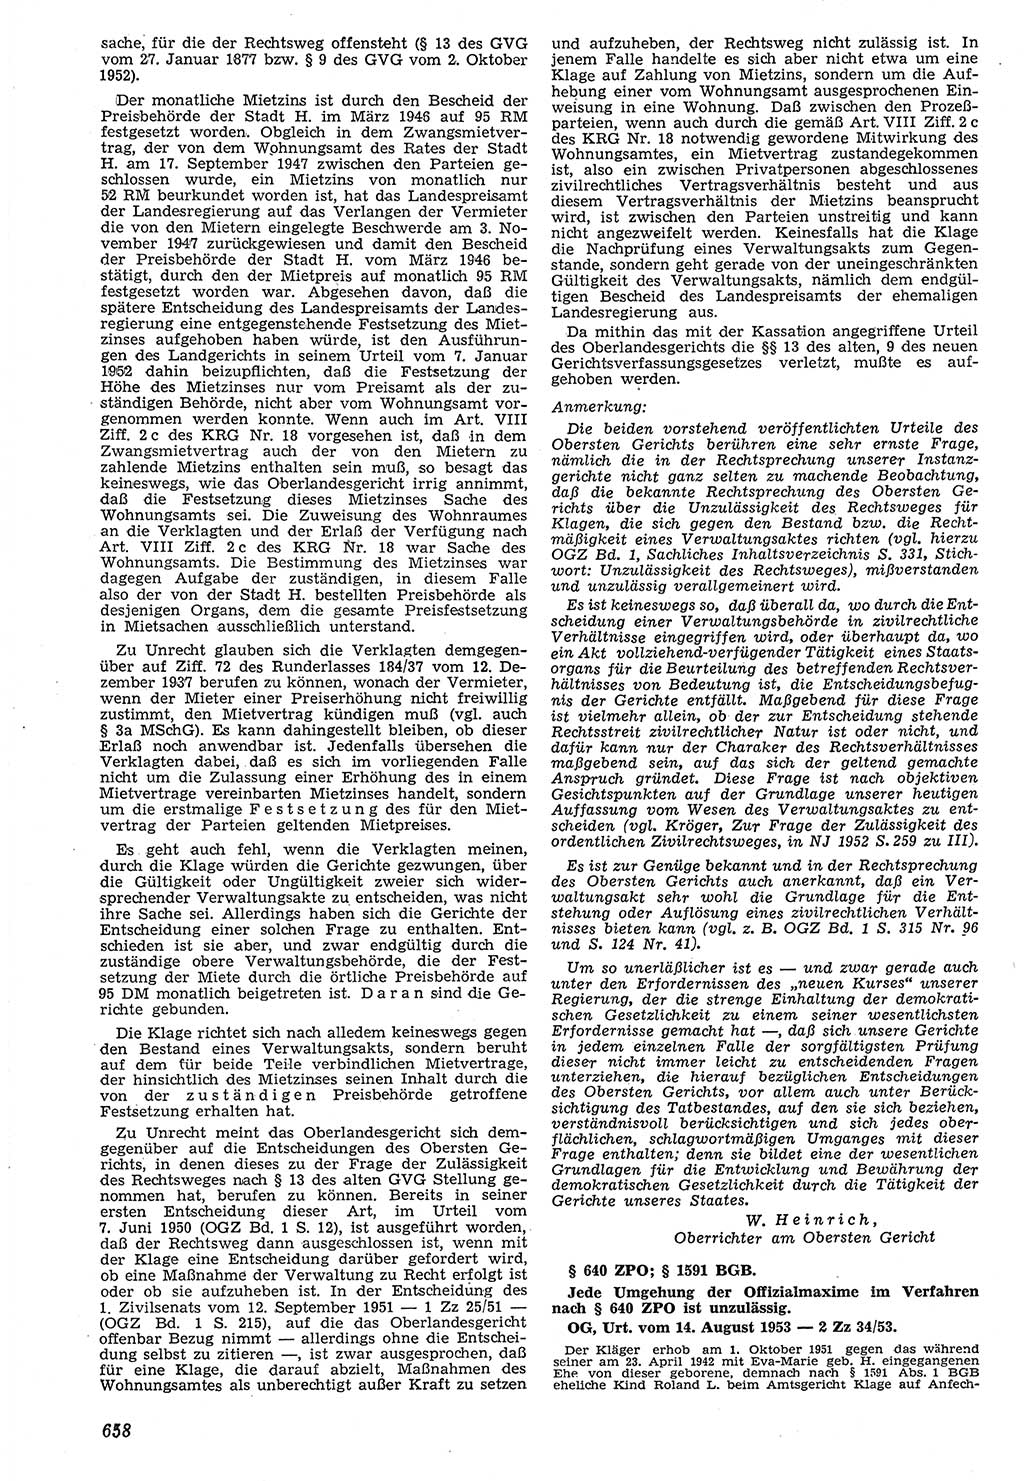 Neue Justiz (NJ), Zeitschrift für Recht und Rechtswissenschaft [Deutsche Demokratische Republik (DDR)], 7. Jahrgang 1953, Seite 658 (NJ DDR 1953, S. 658)